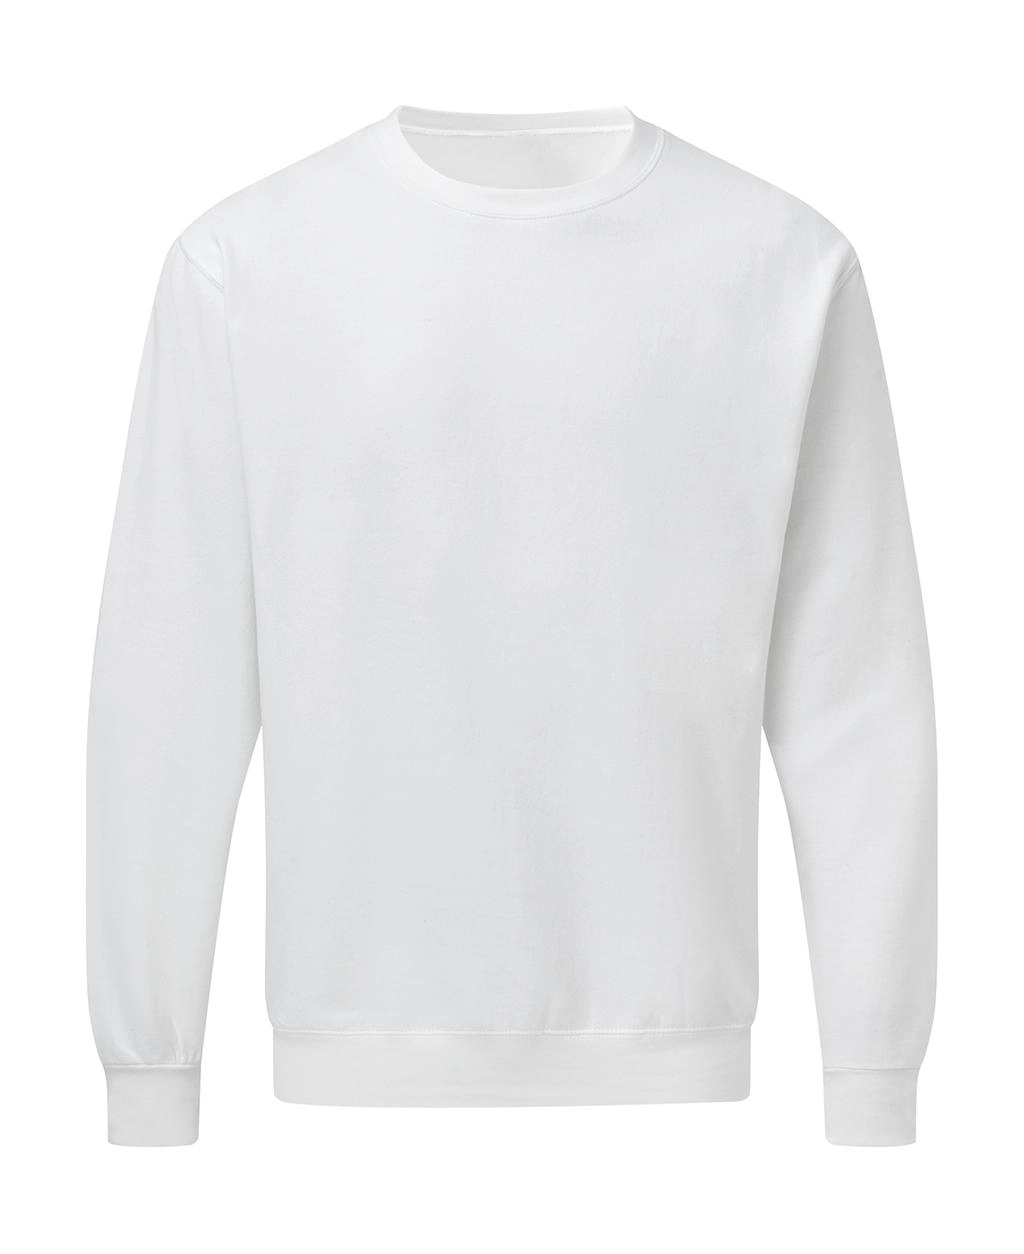 Crew Neck Sweatshirt Men zum Besticken und Bedrucken in der Farbe White mit Ihren Logo, Schriftzug oder Motiv.